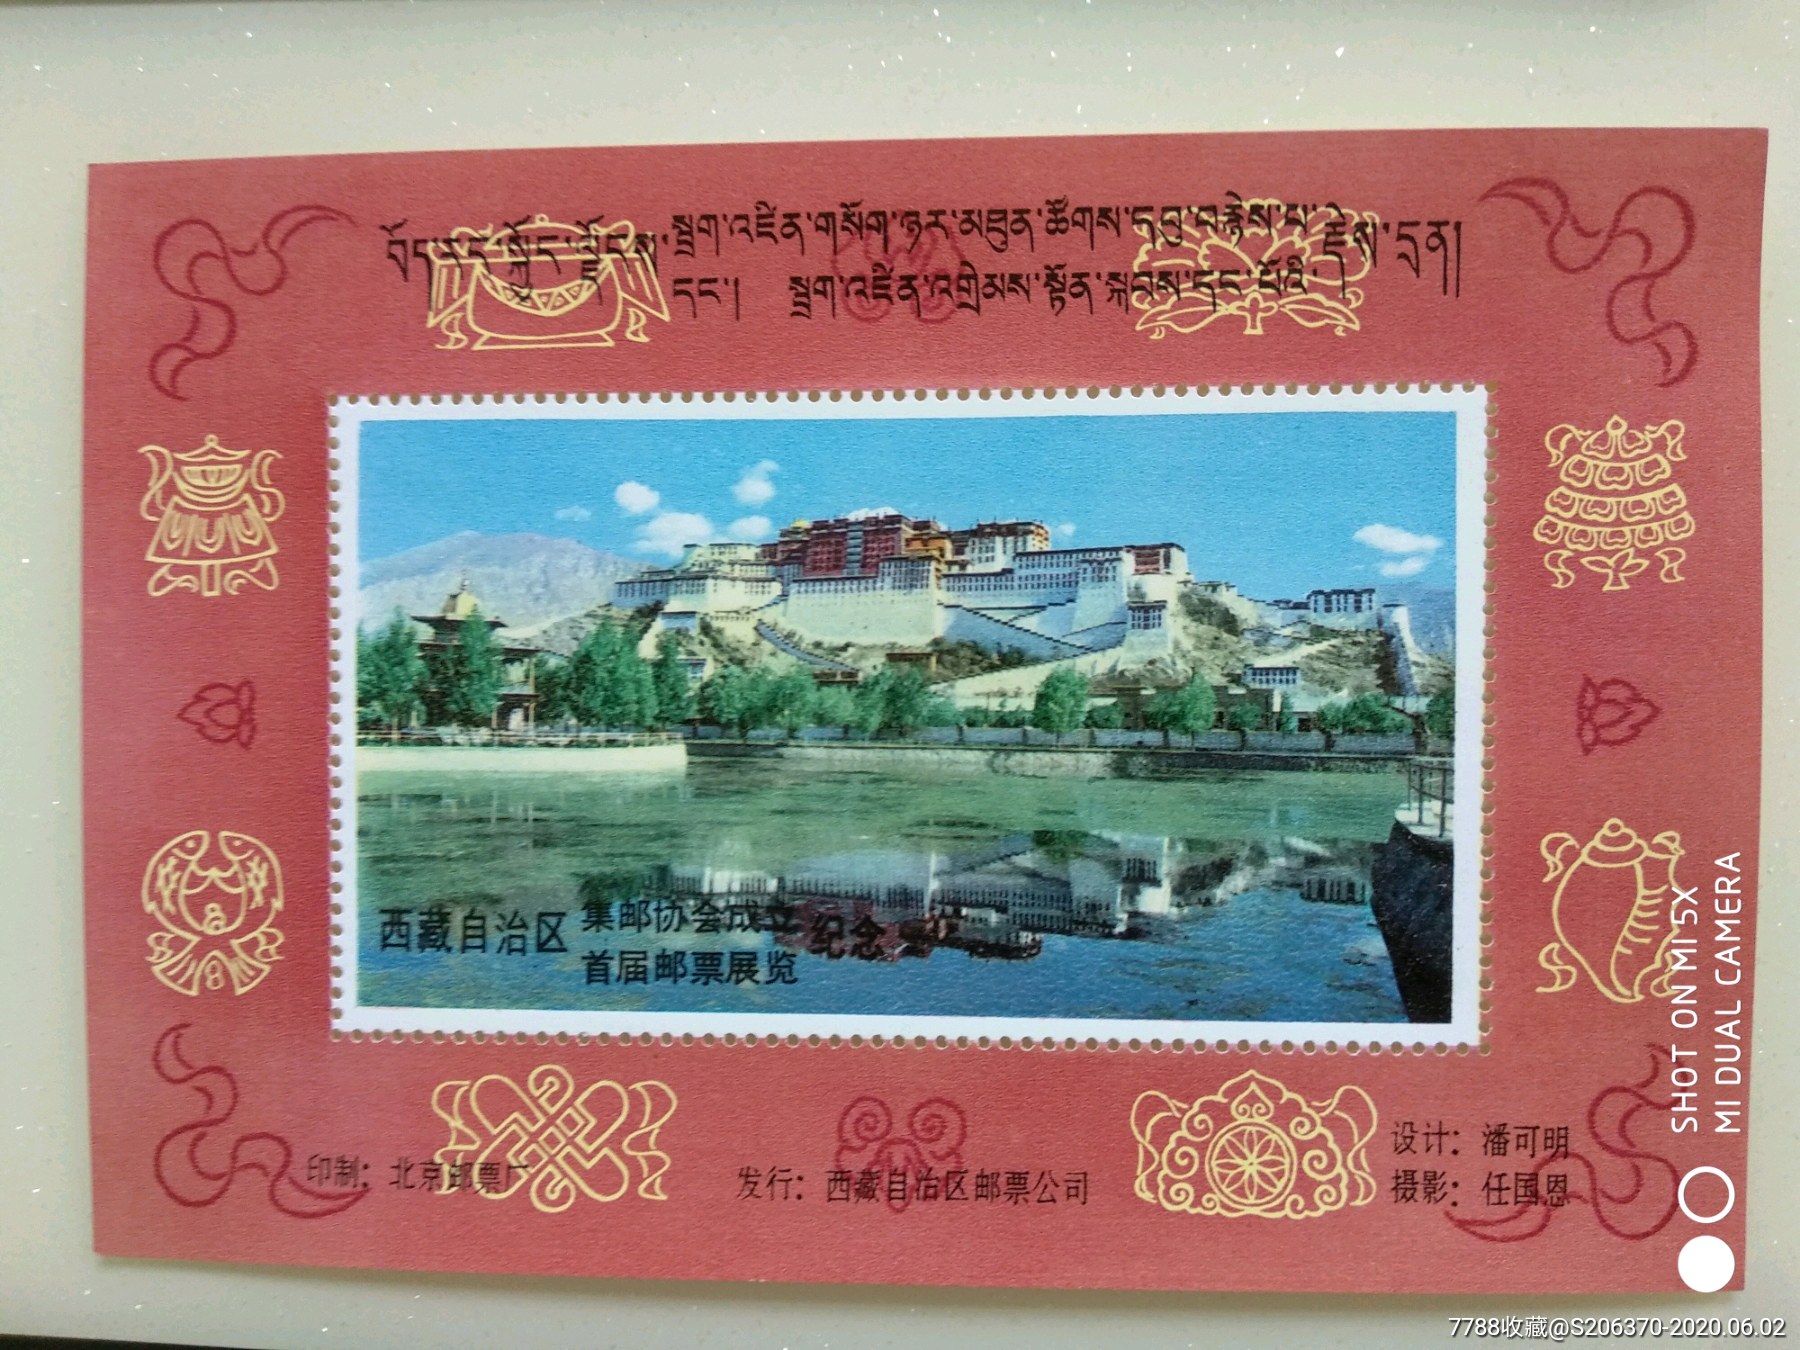 西藏自治区集邮协会成立首届邮票展览纪念张-价格:5元-se73427755-信